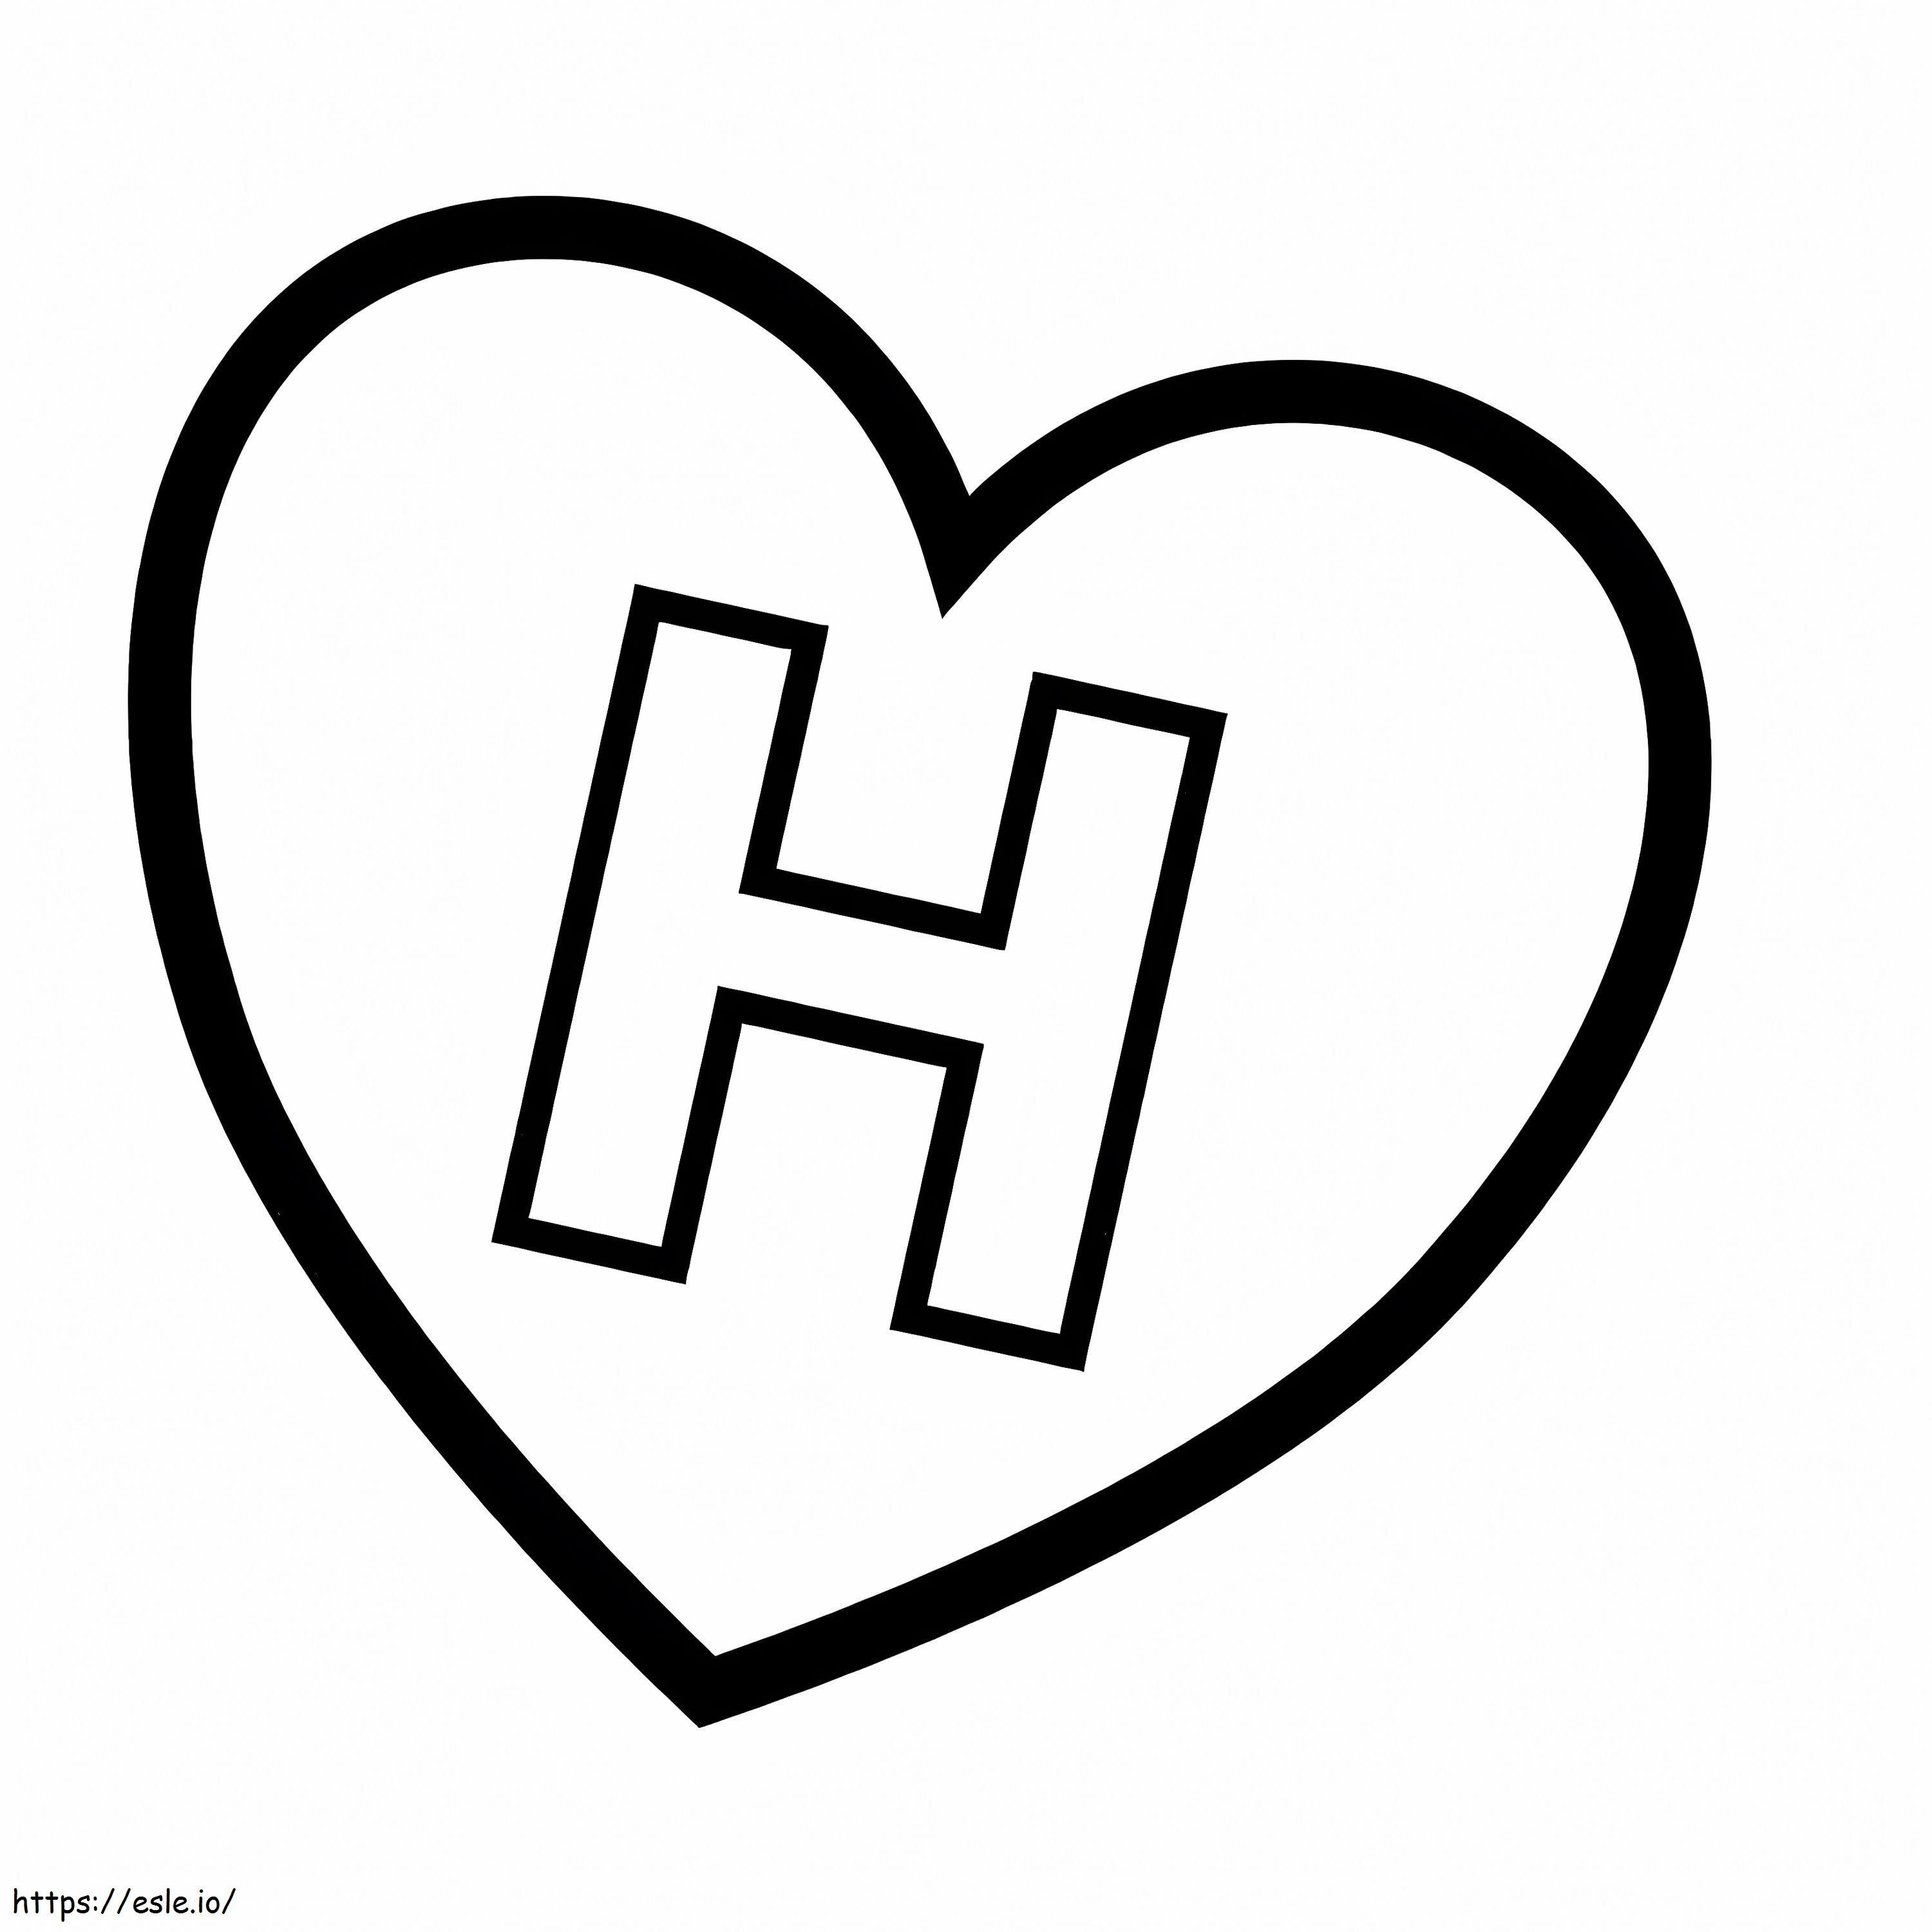 Coloriage Lettre H en coeur à imprimer dessin